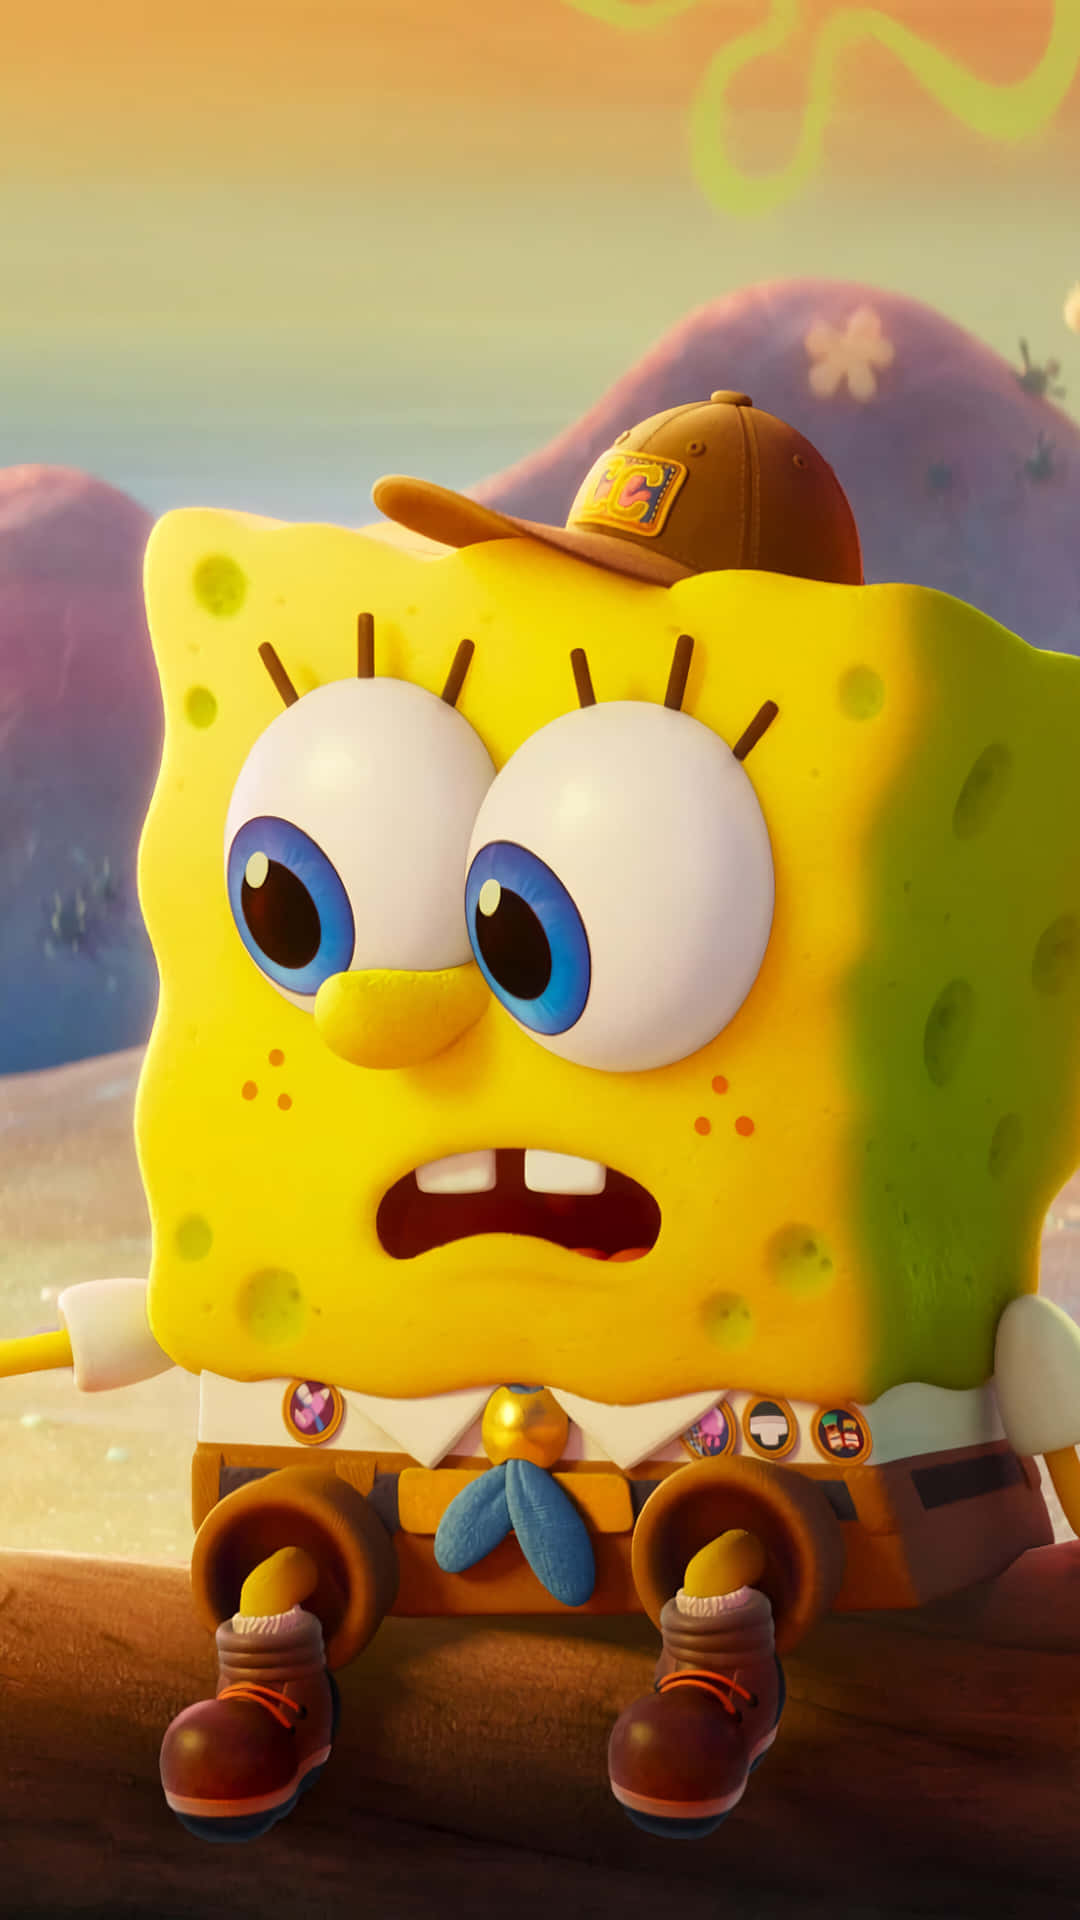 Download Sad Emo SpongeBob PFP Wallpaper